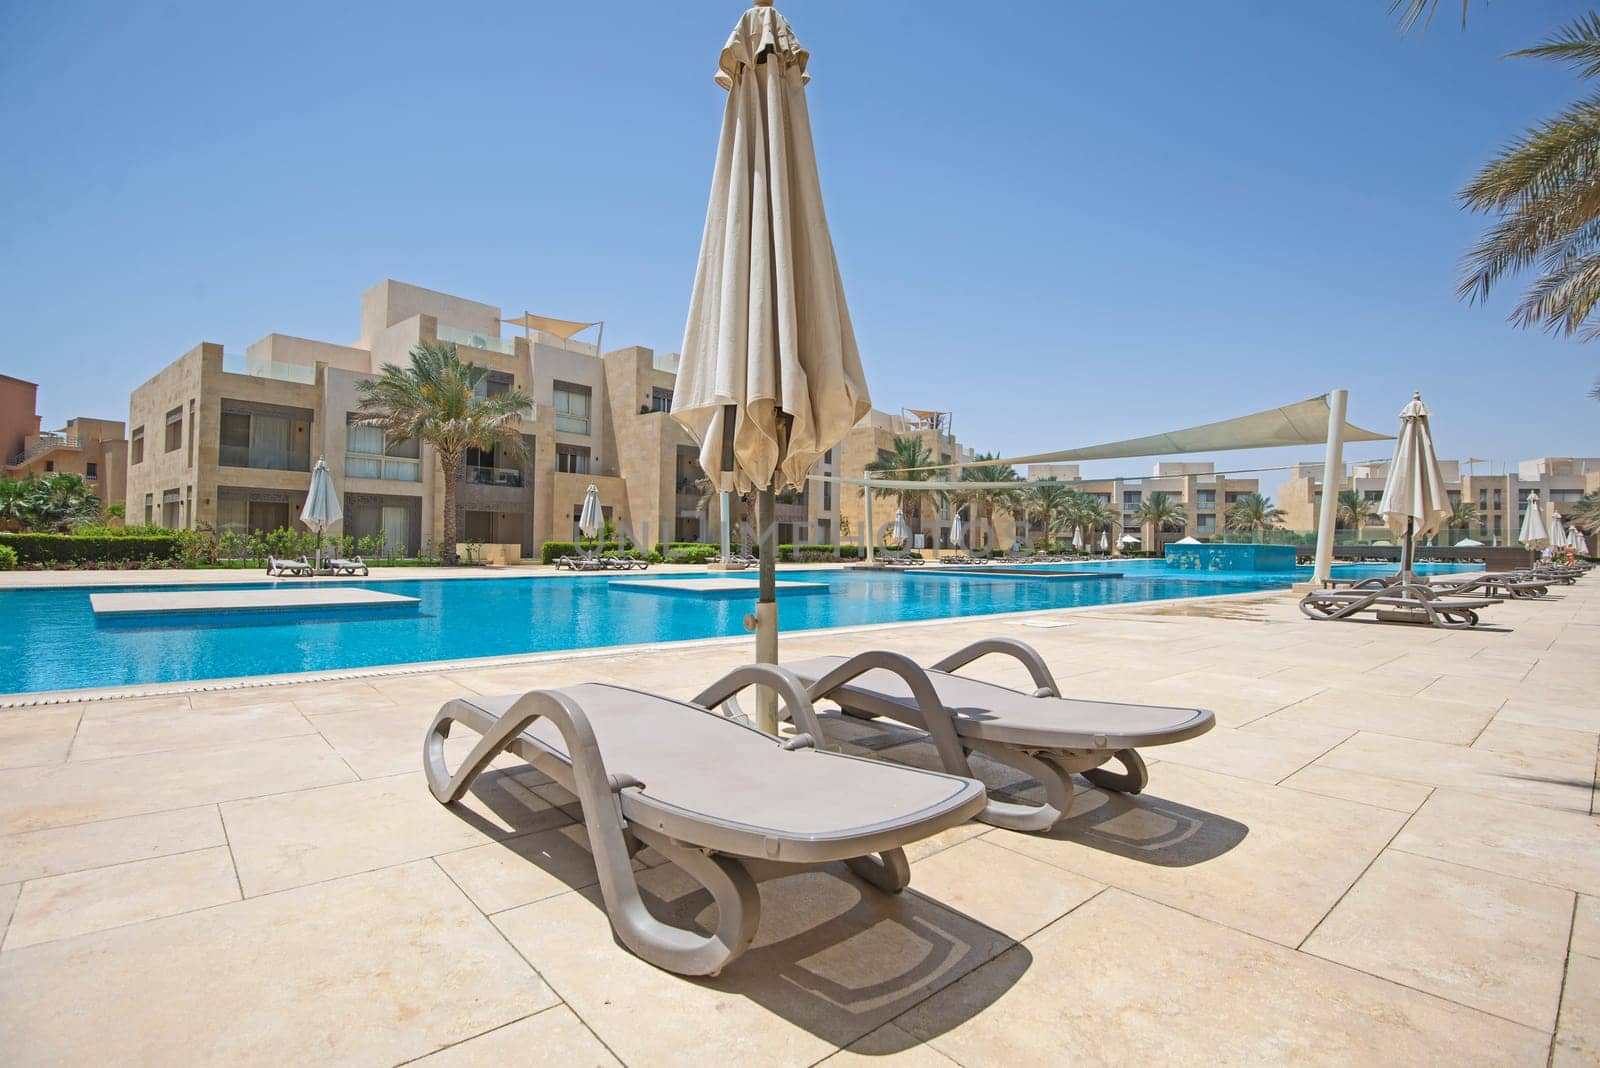 Swimming pool in tropical luxury apartment resort by paulvinten